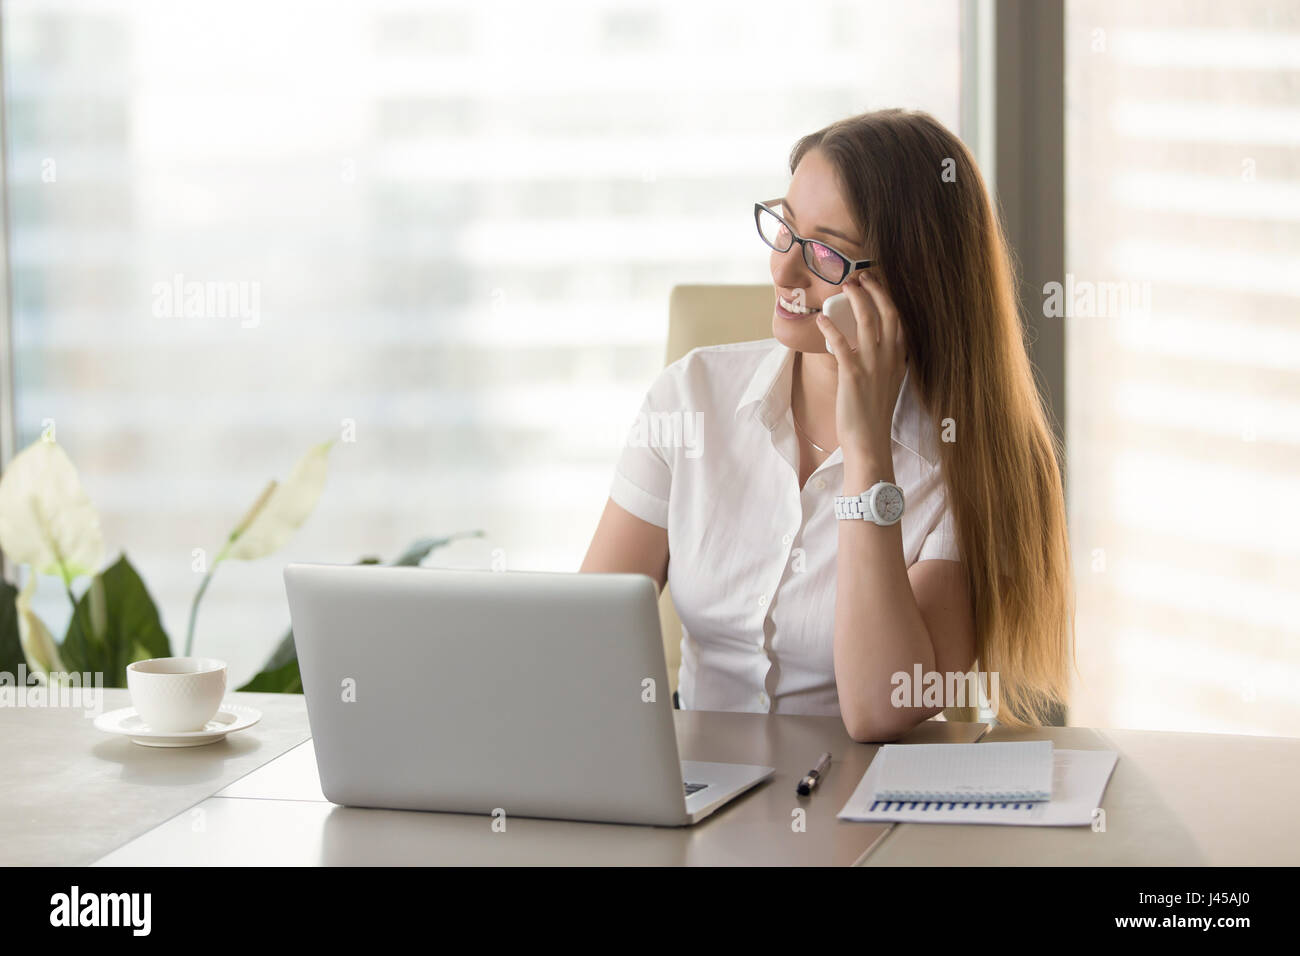 Asesor Financiero femenino consultan a los clientes por teléfono Foto de stock